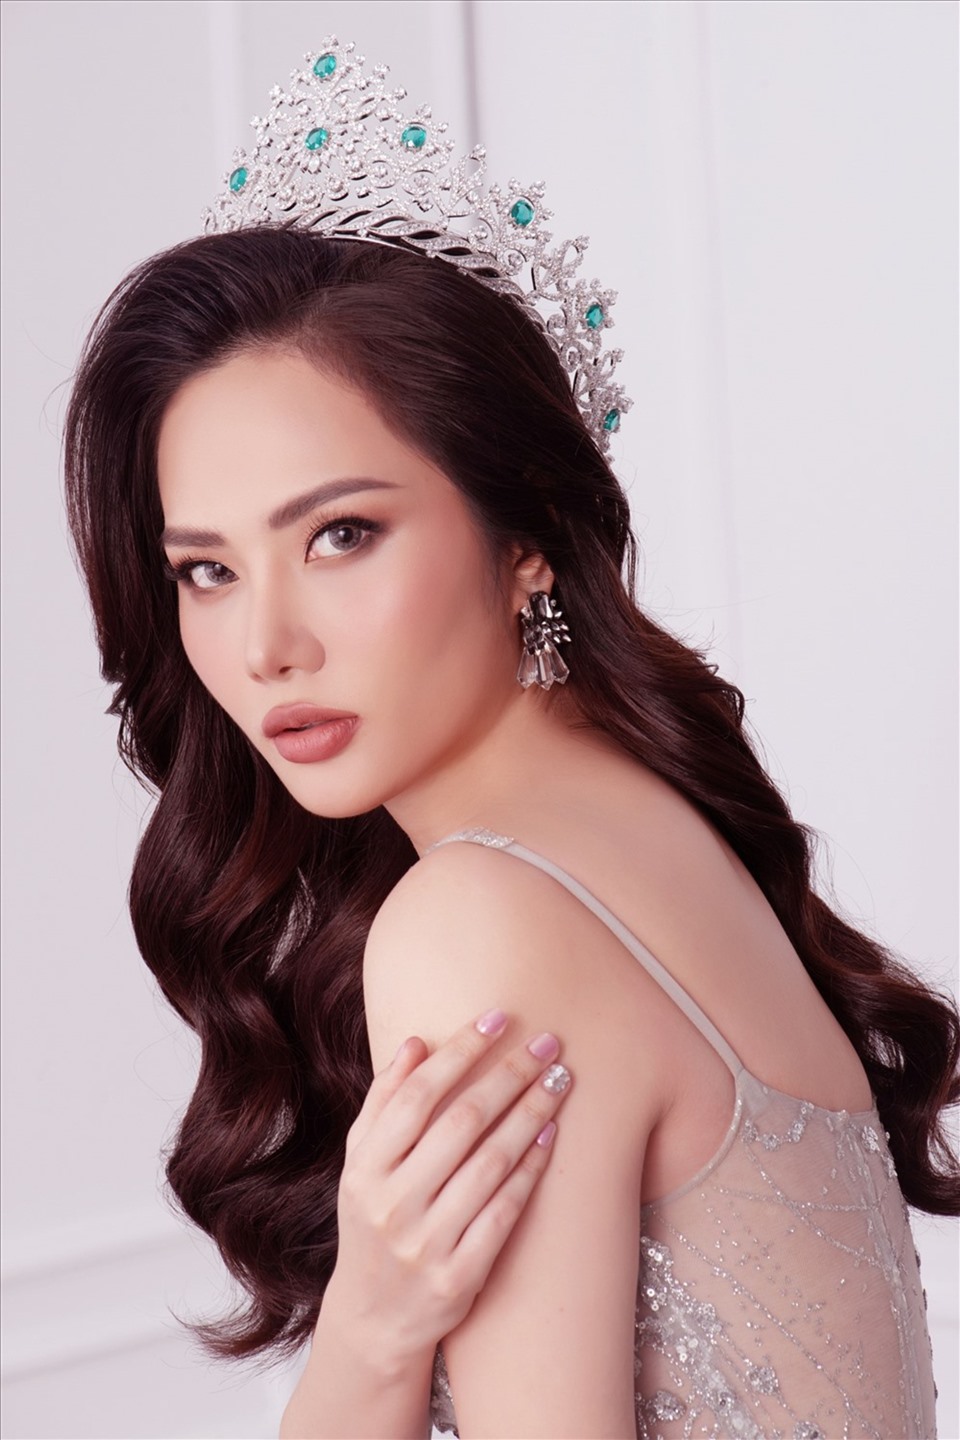 30 người đẹp sẽ bước vào vòng bán kết cuộc thi “Hoa hậu Môi trường Việt Nam” sẽ được tổ chức vào đêm 22.5.2022, tại Nhà hát lớn TPHCM.